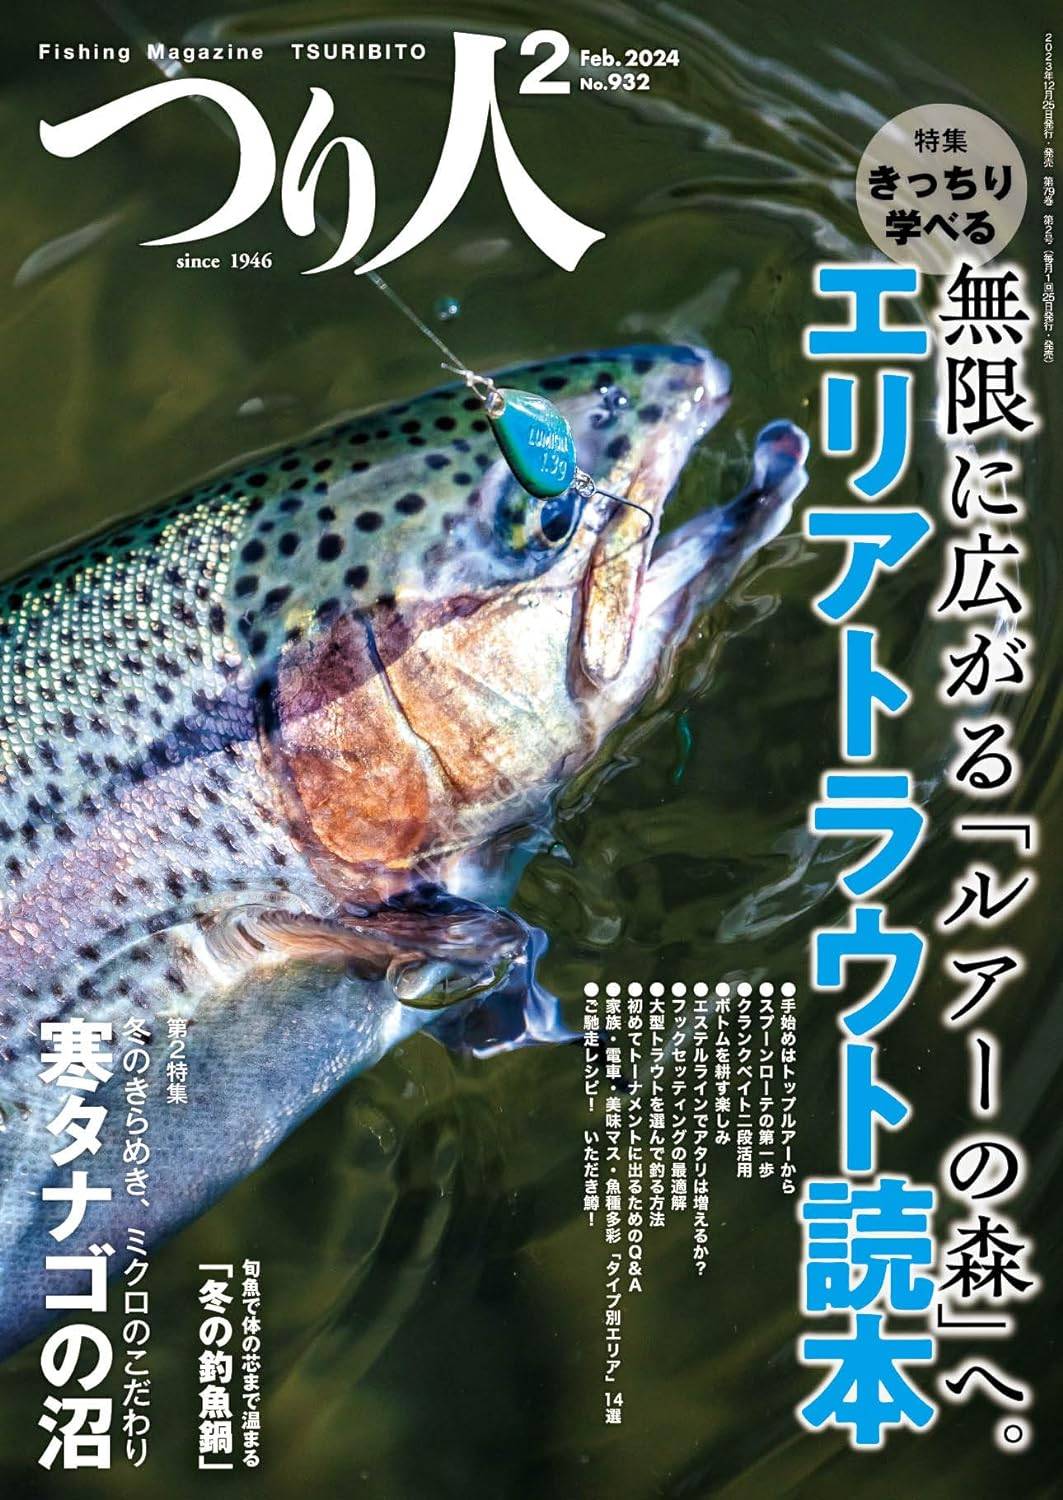 BOOKS & VIDEO Fishing Magazine Tsuribito 2Feb.2024 No.932 BOOKS